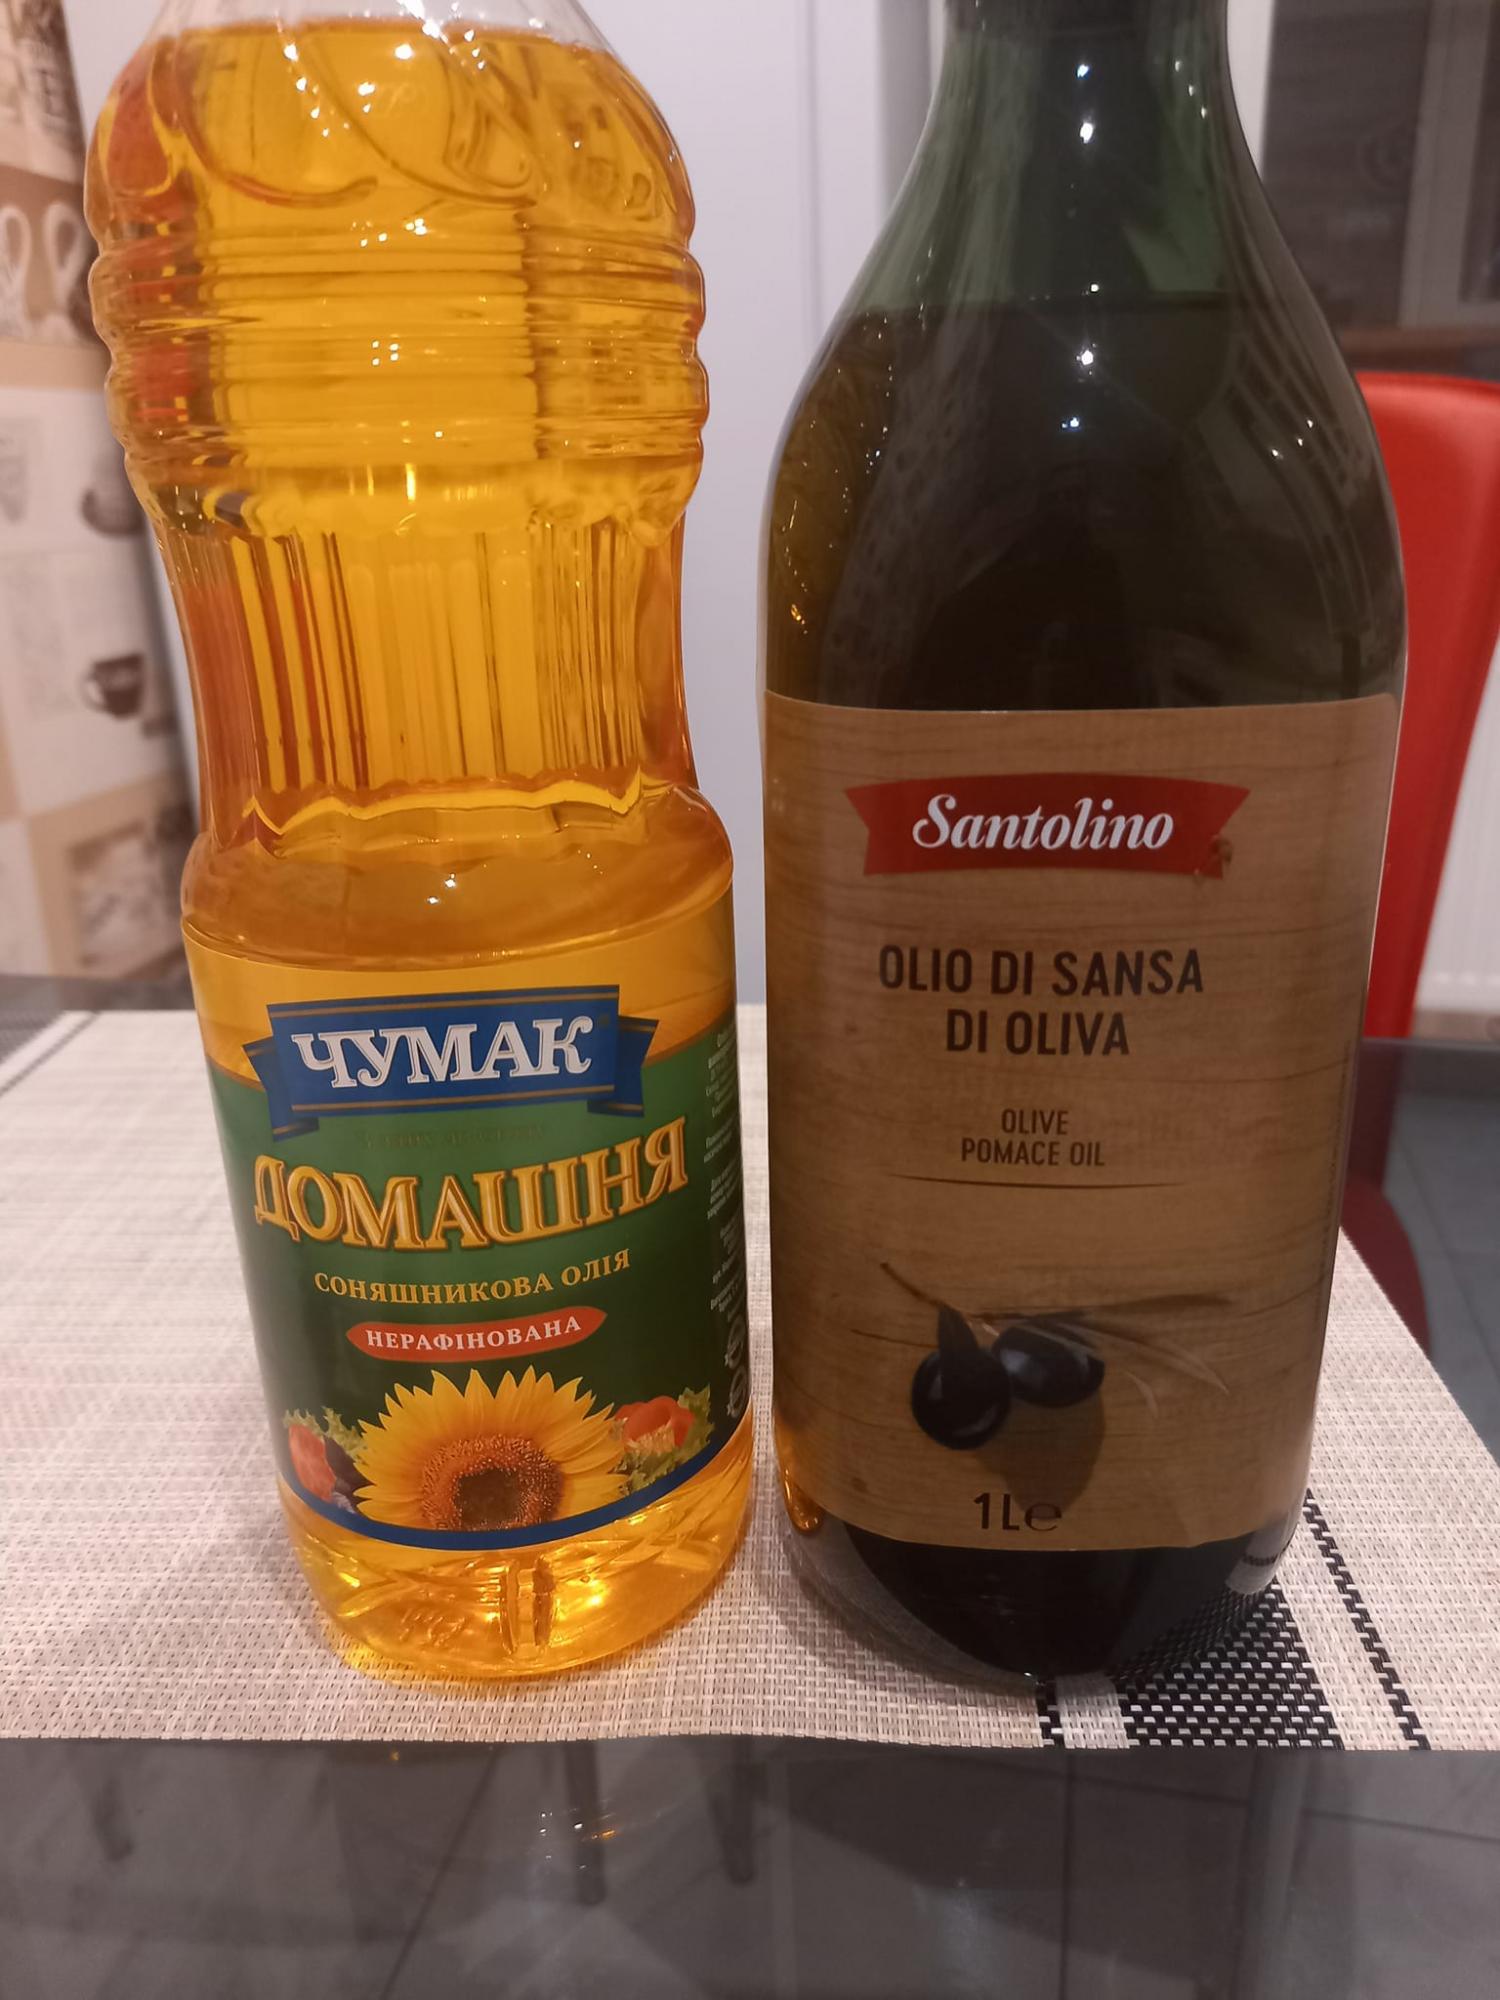 В Украине подсолнечное масло по цене сравнялось с оливковым: в сети показали доказательство